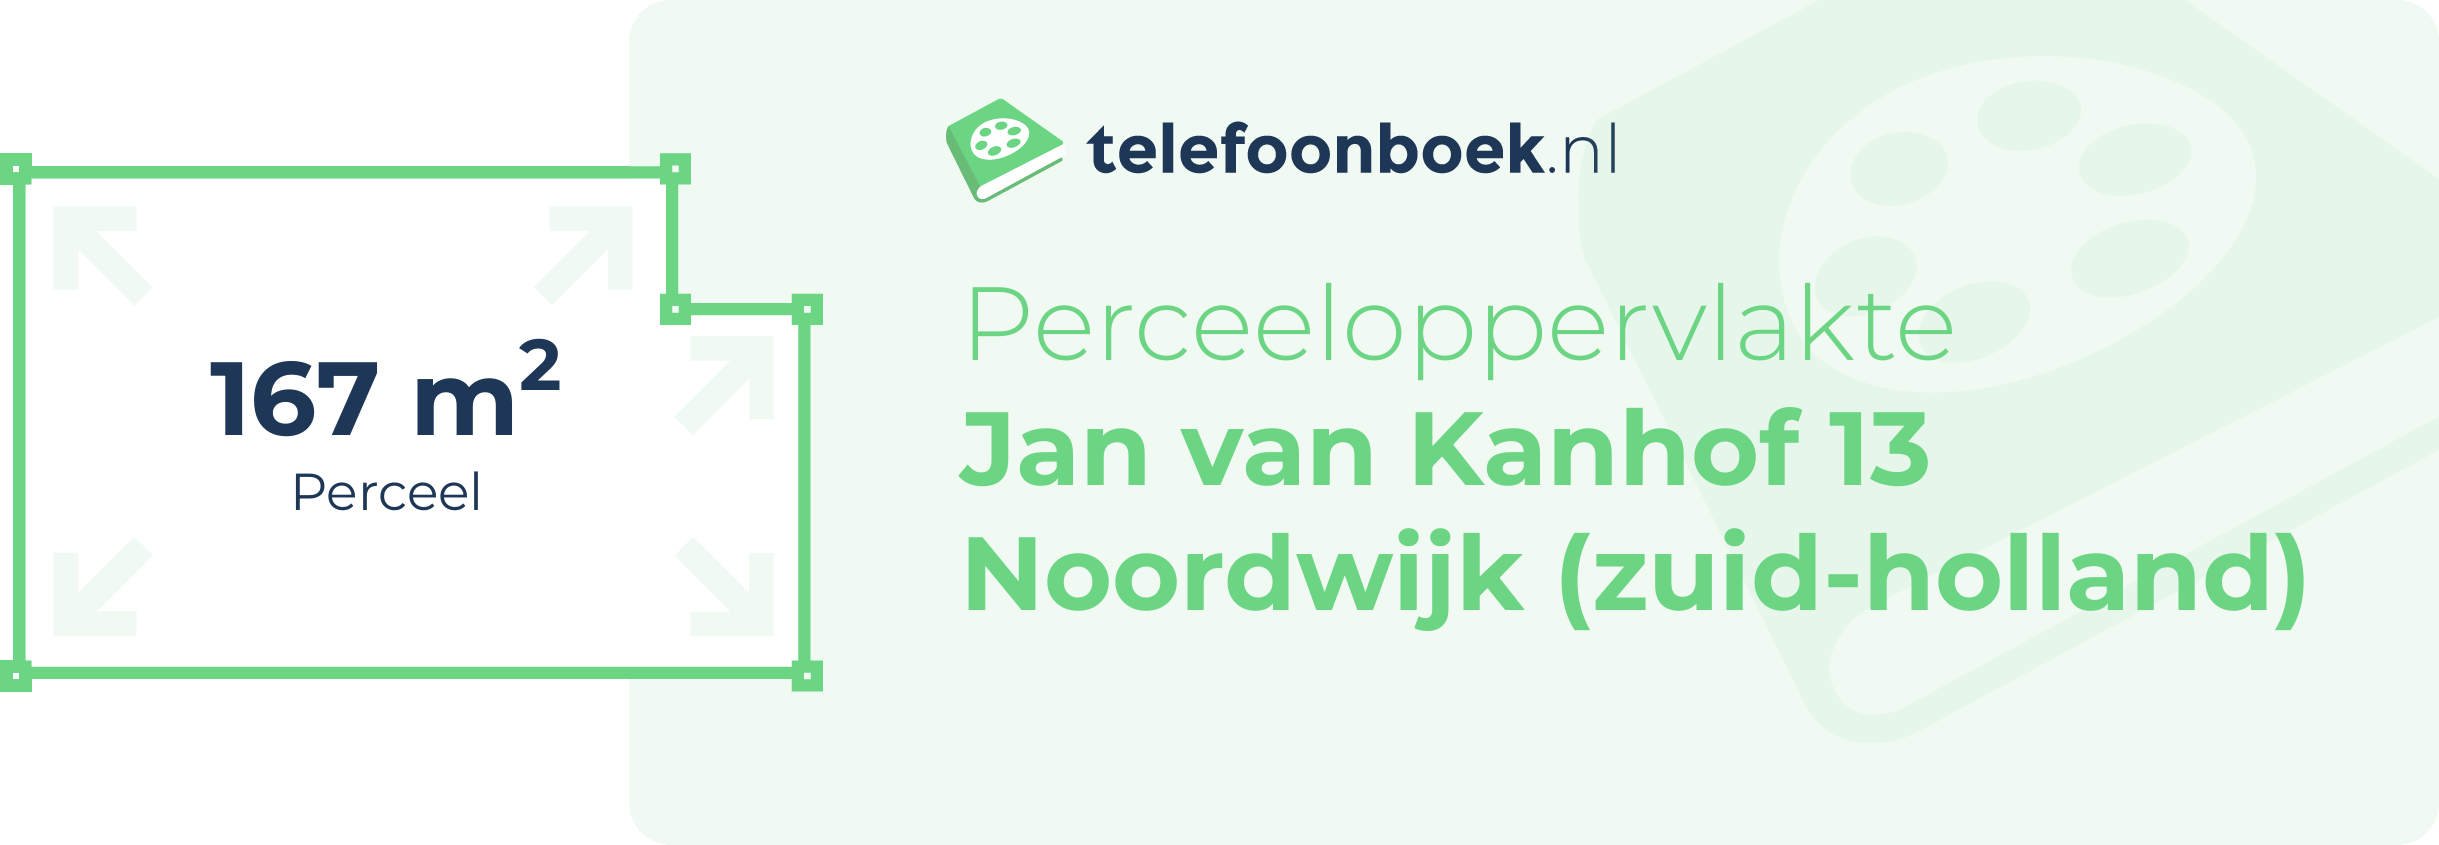 Perceeloppervlakte Jan Van Kanhof 13 Noordwijk (Zuid-Holland)